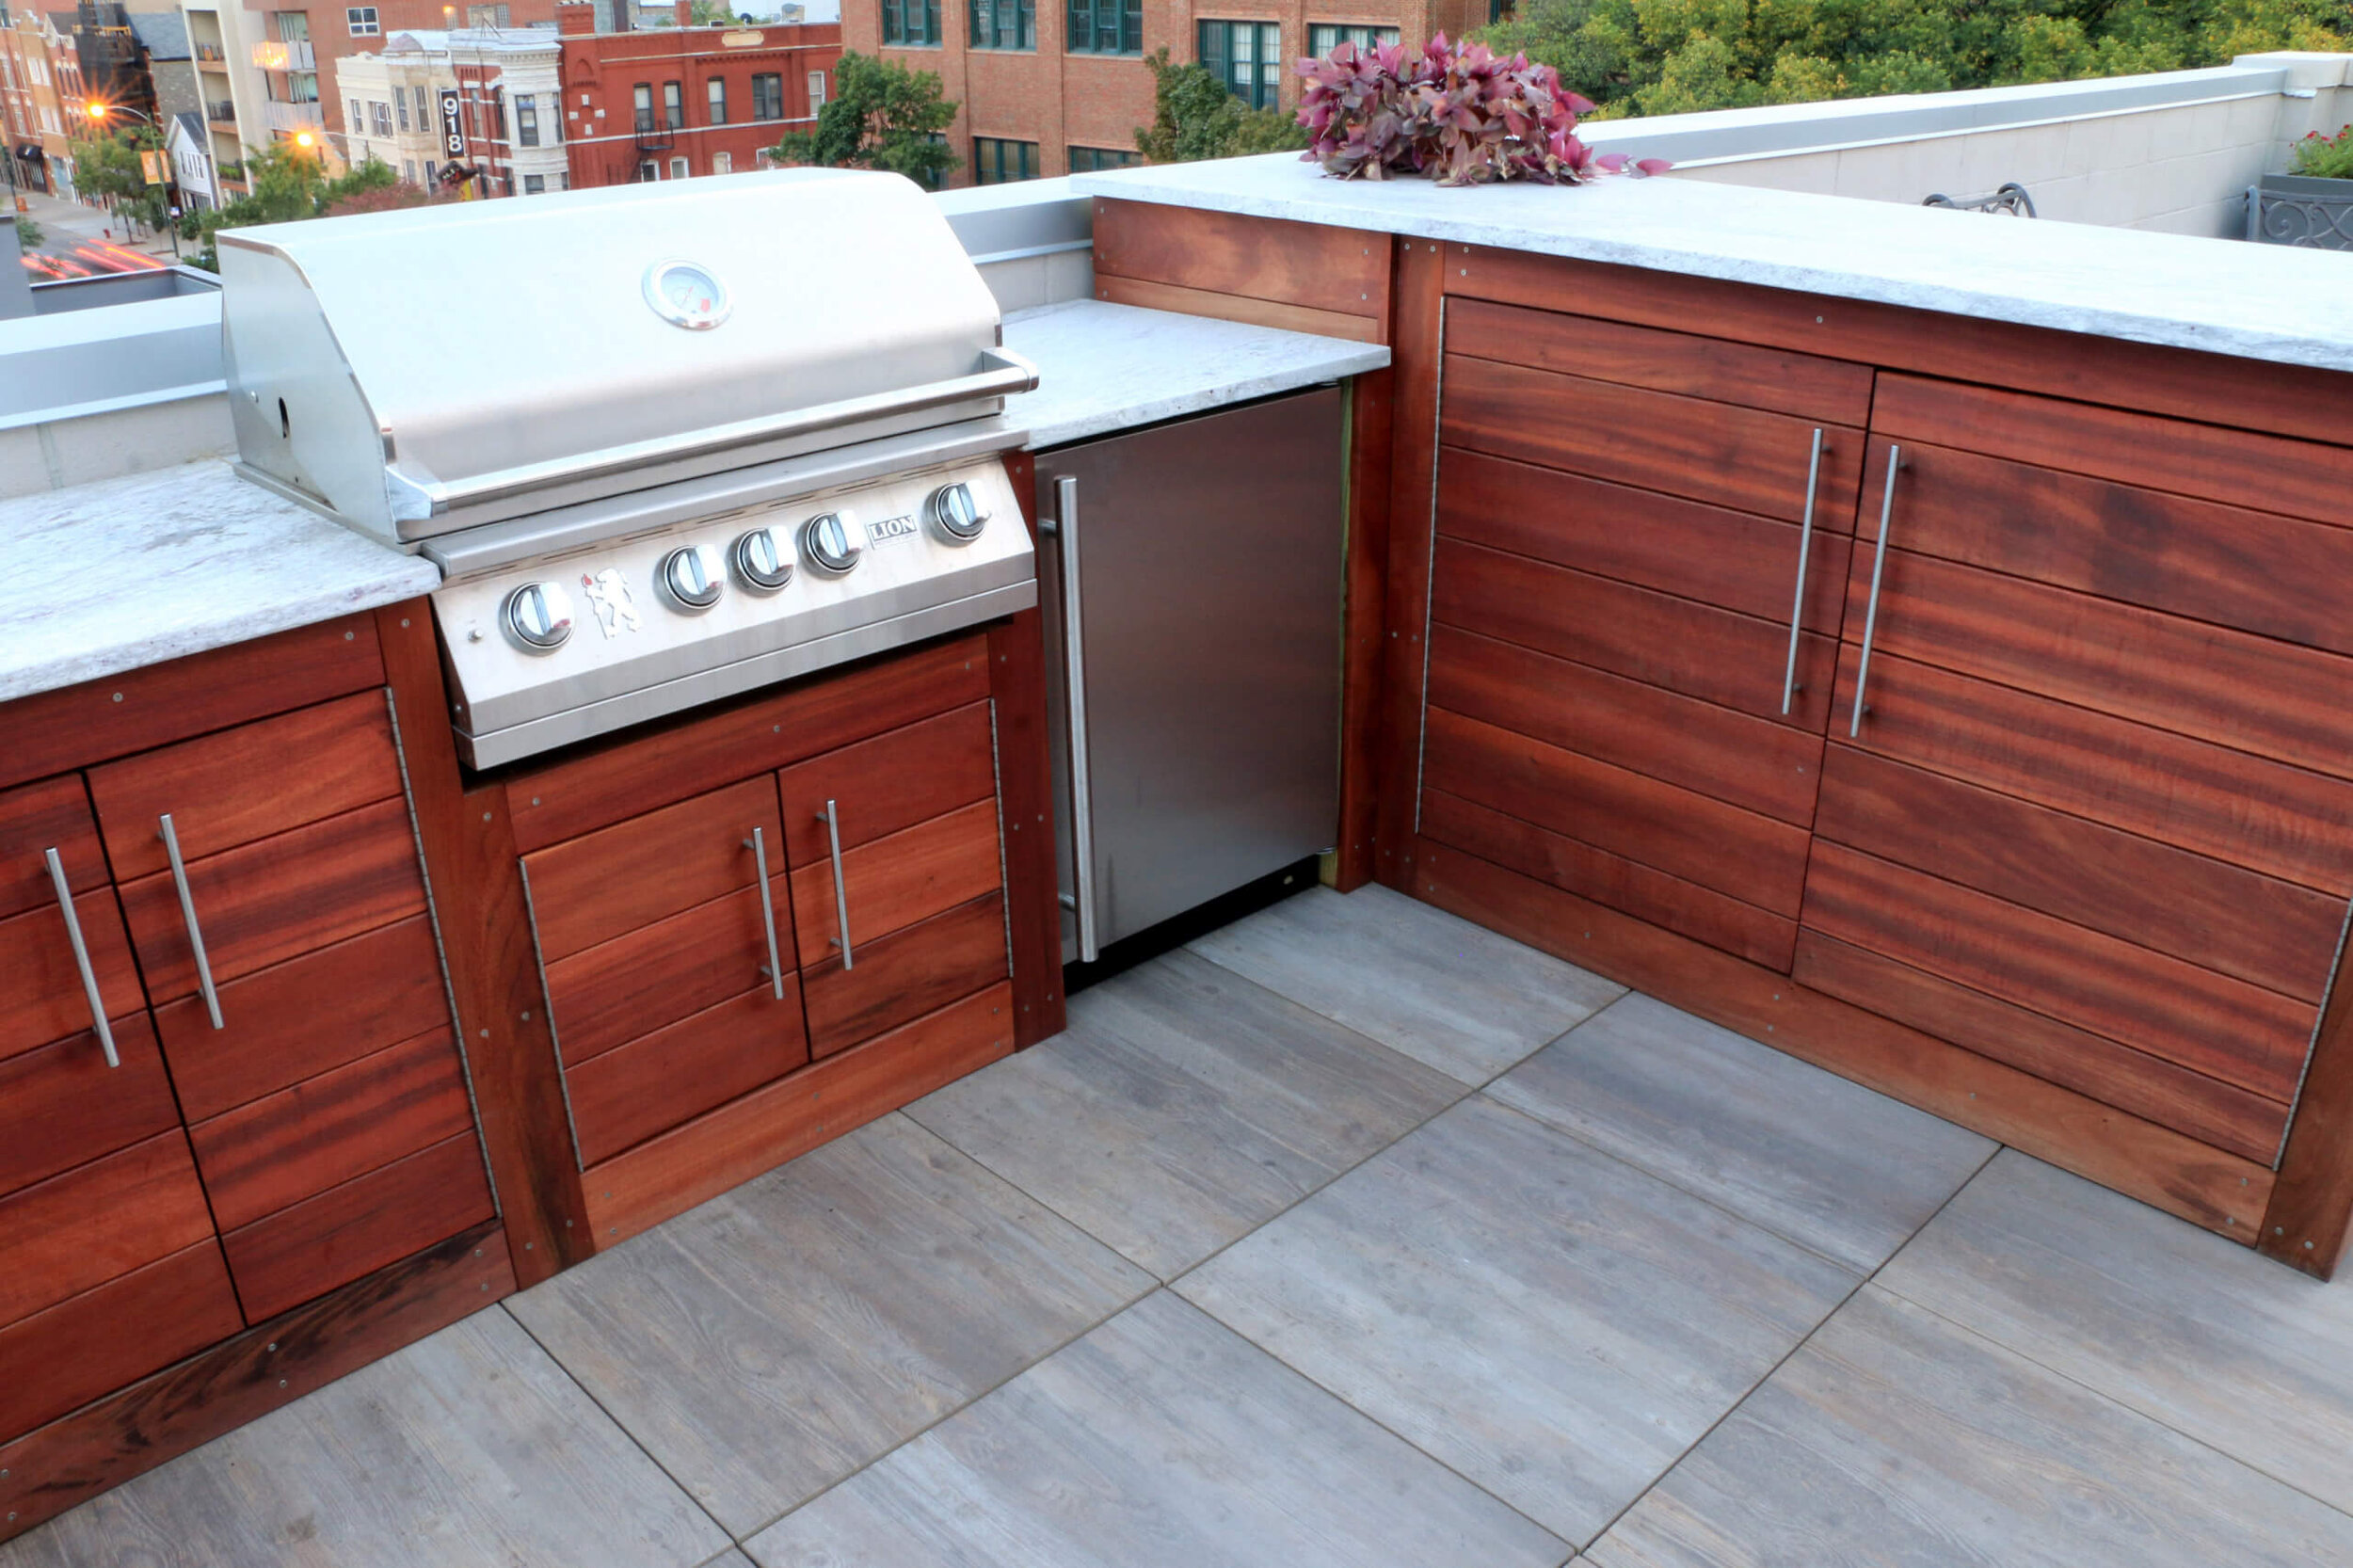 Chicago Rooftop Deck Kitchen Installation Services